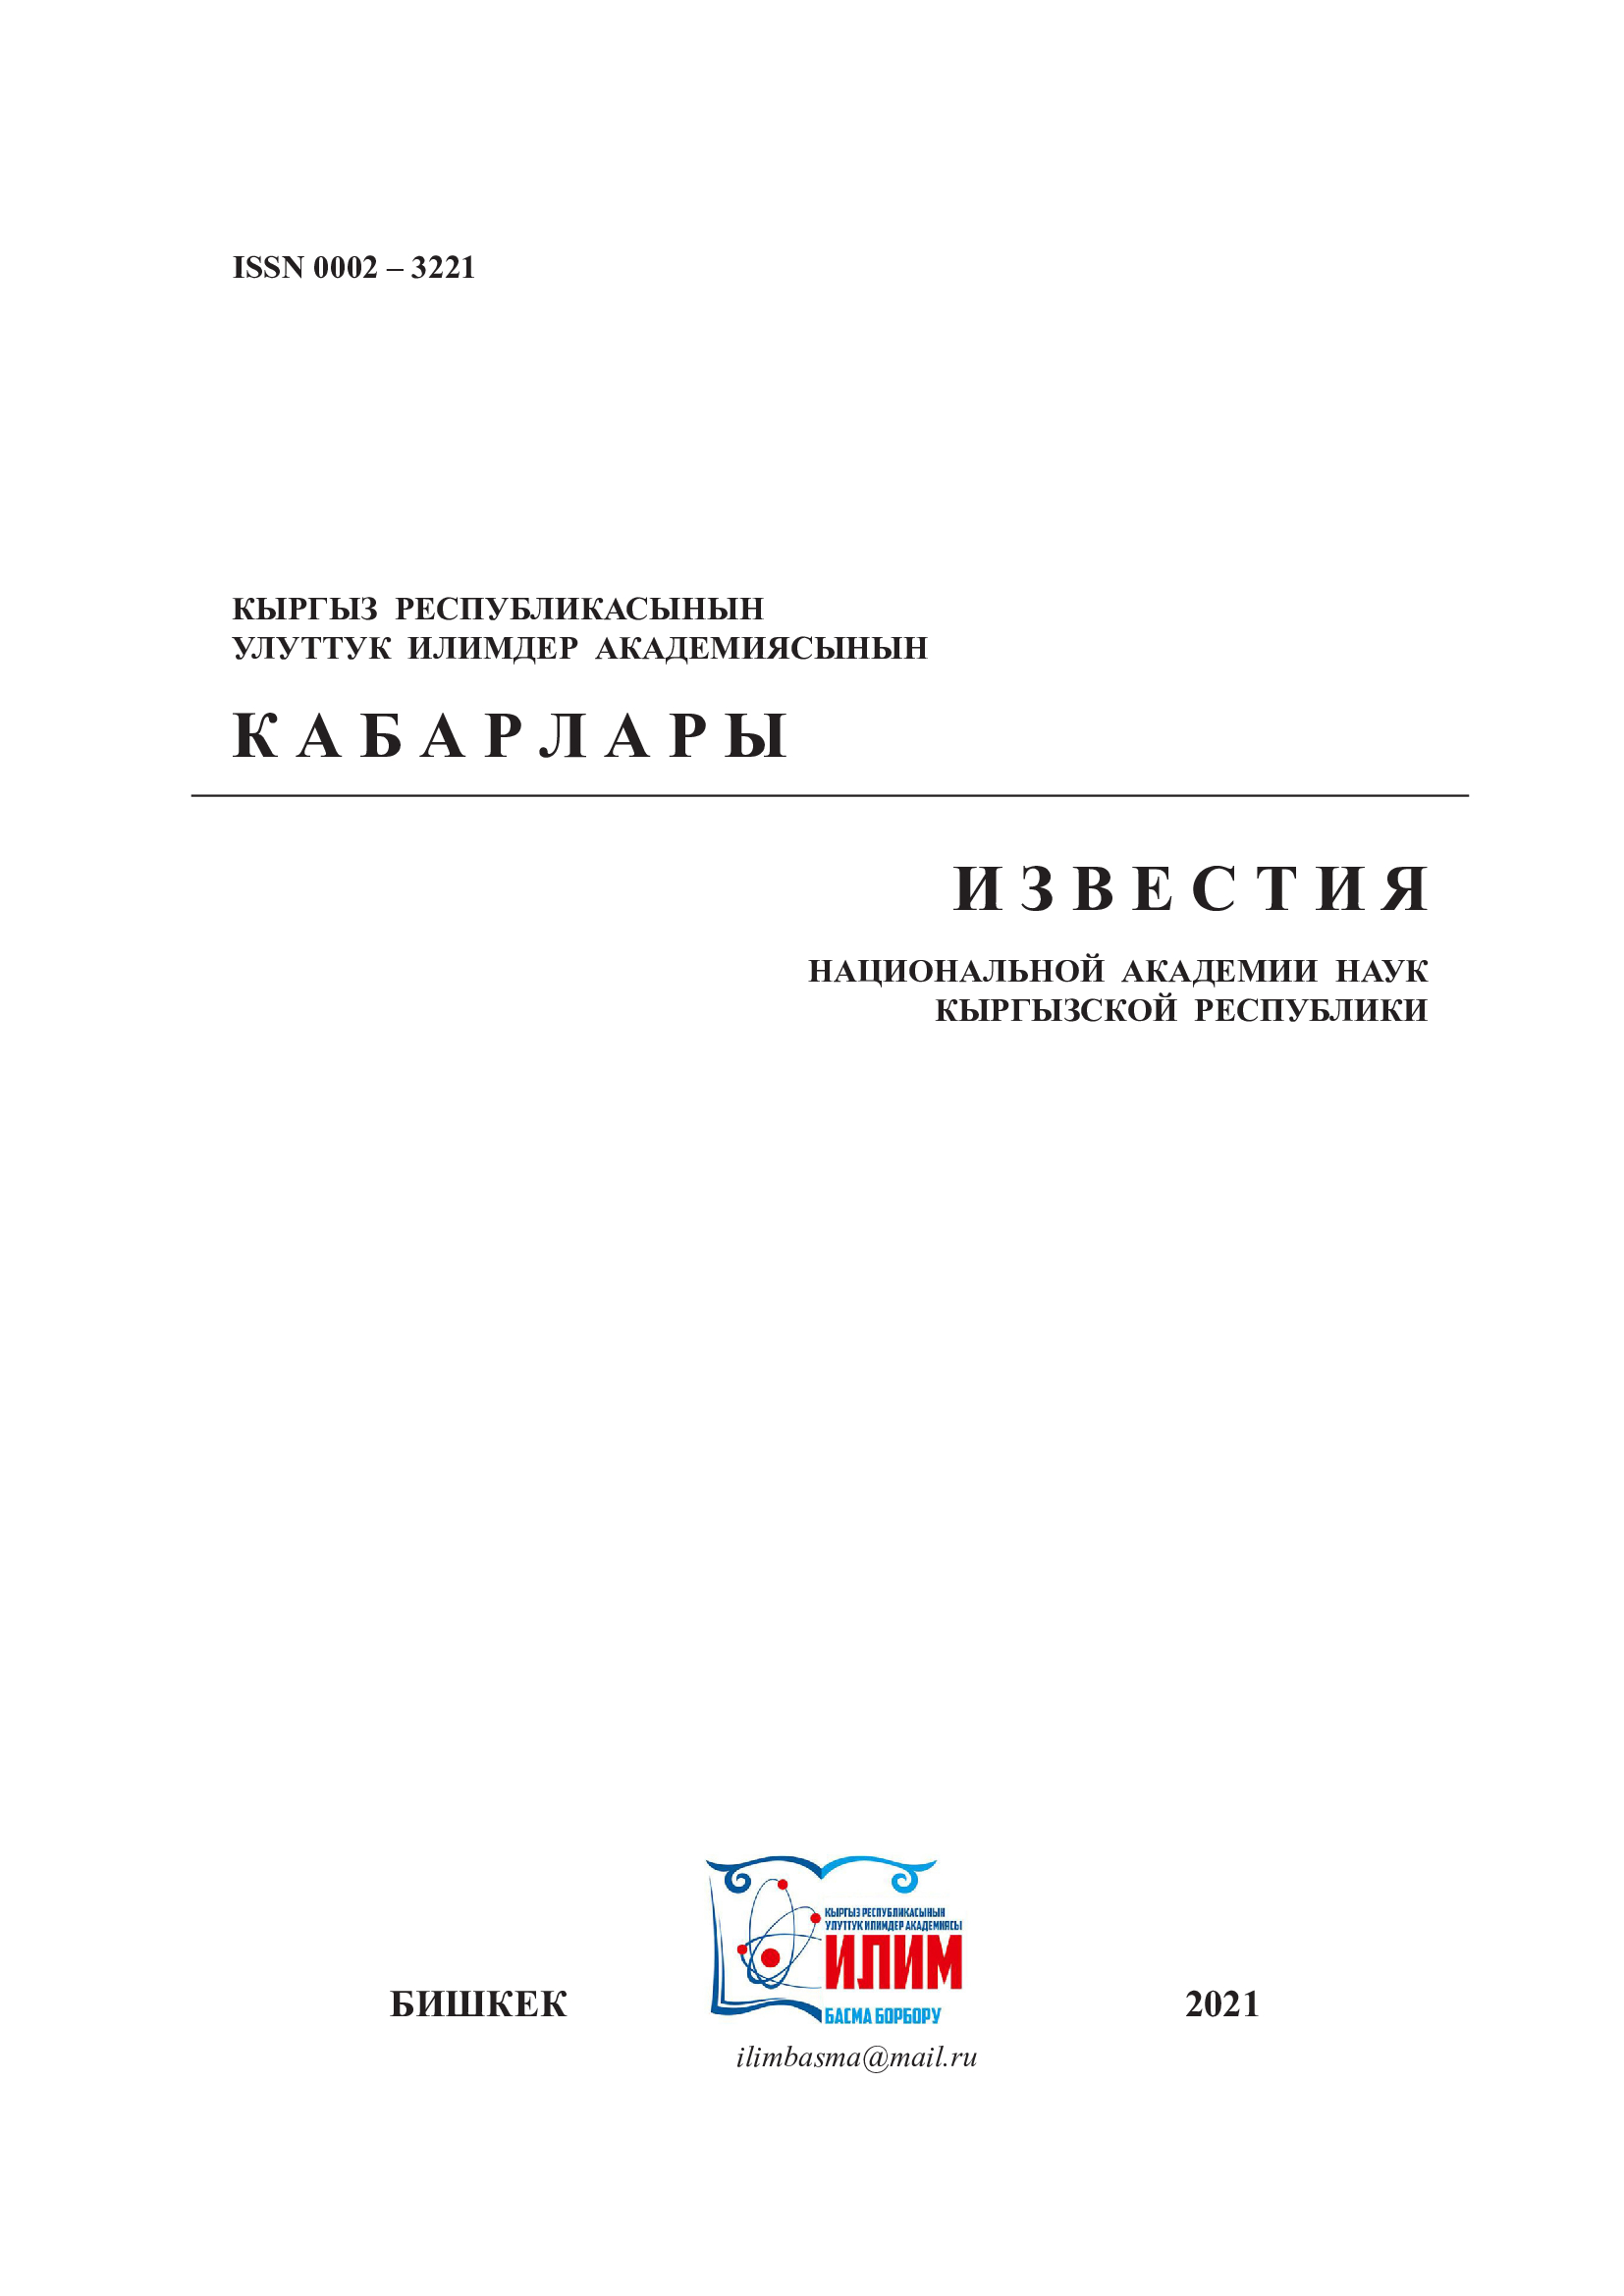 					Показать № 2S (2021): Известия Национальной академии наук Кыргызской Республики
				